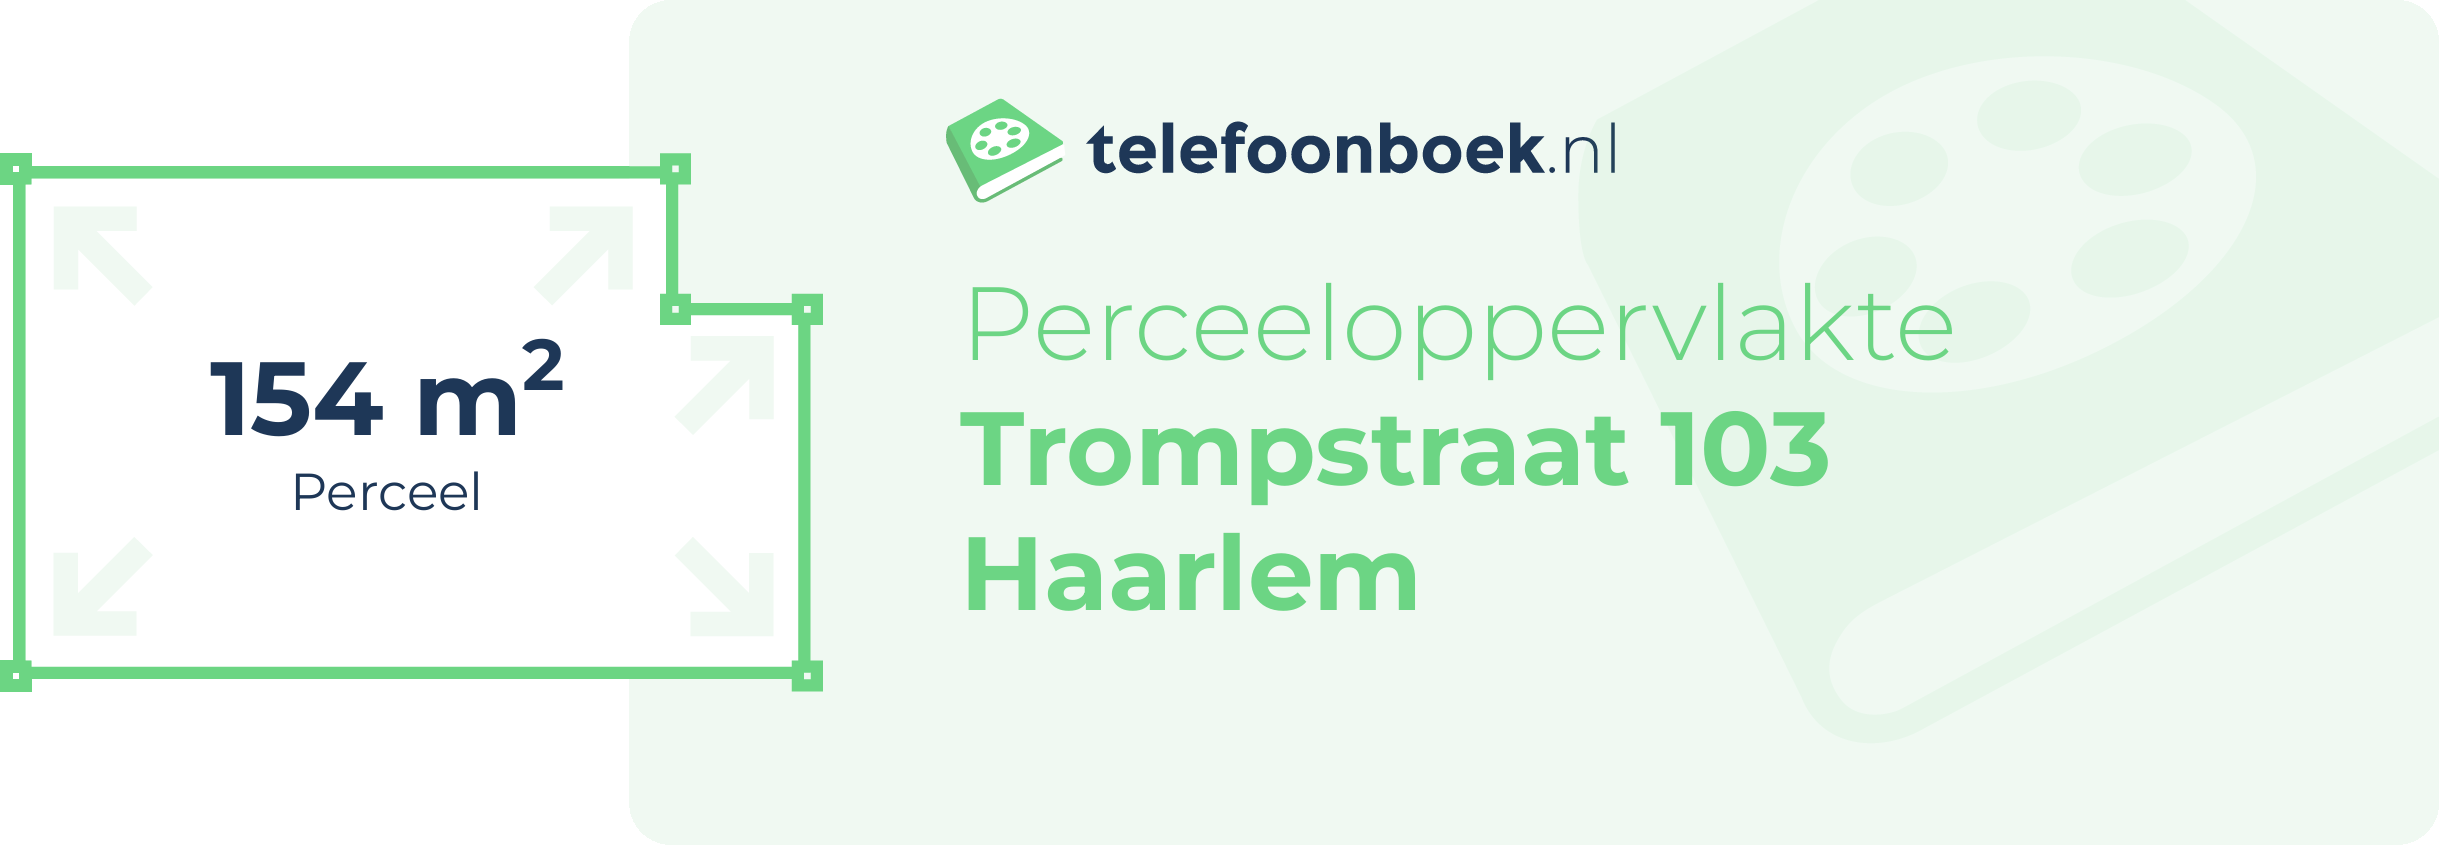 Perceeloppervlakte Trompstraat 103 Haarlem